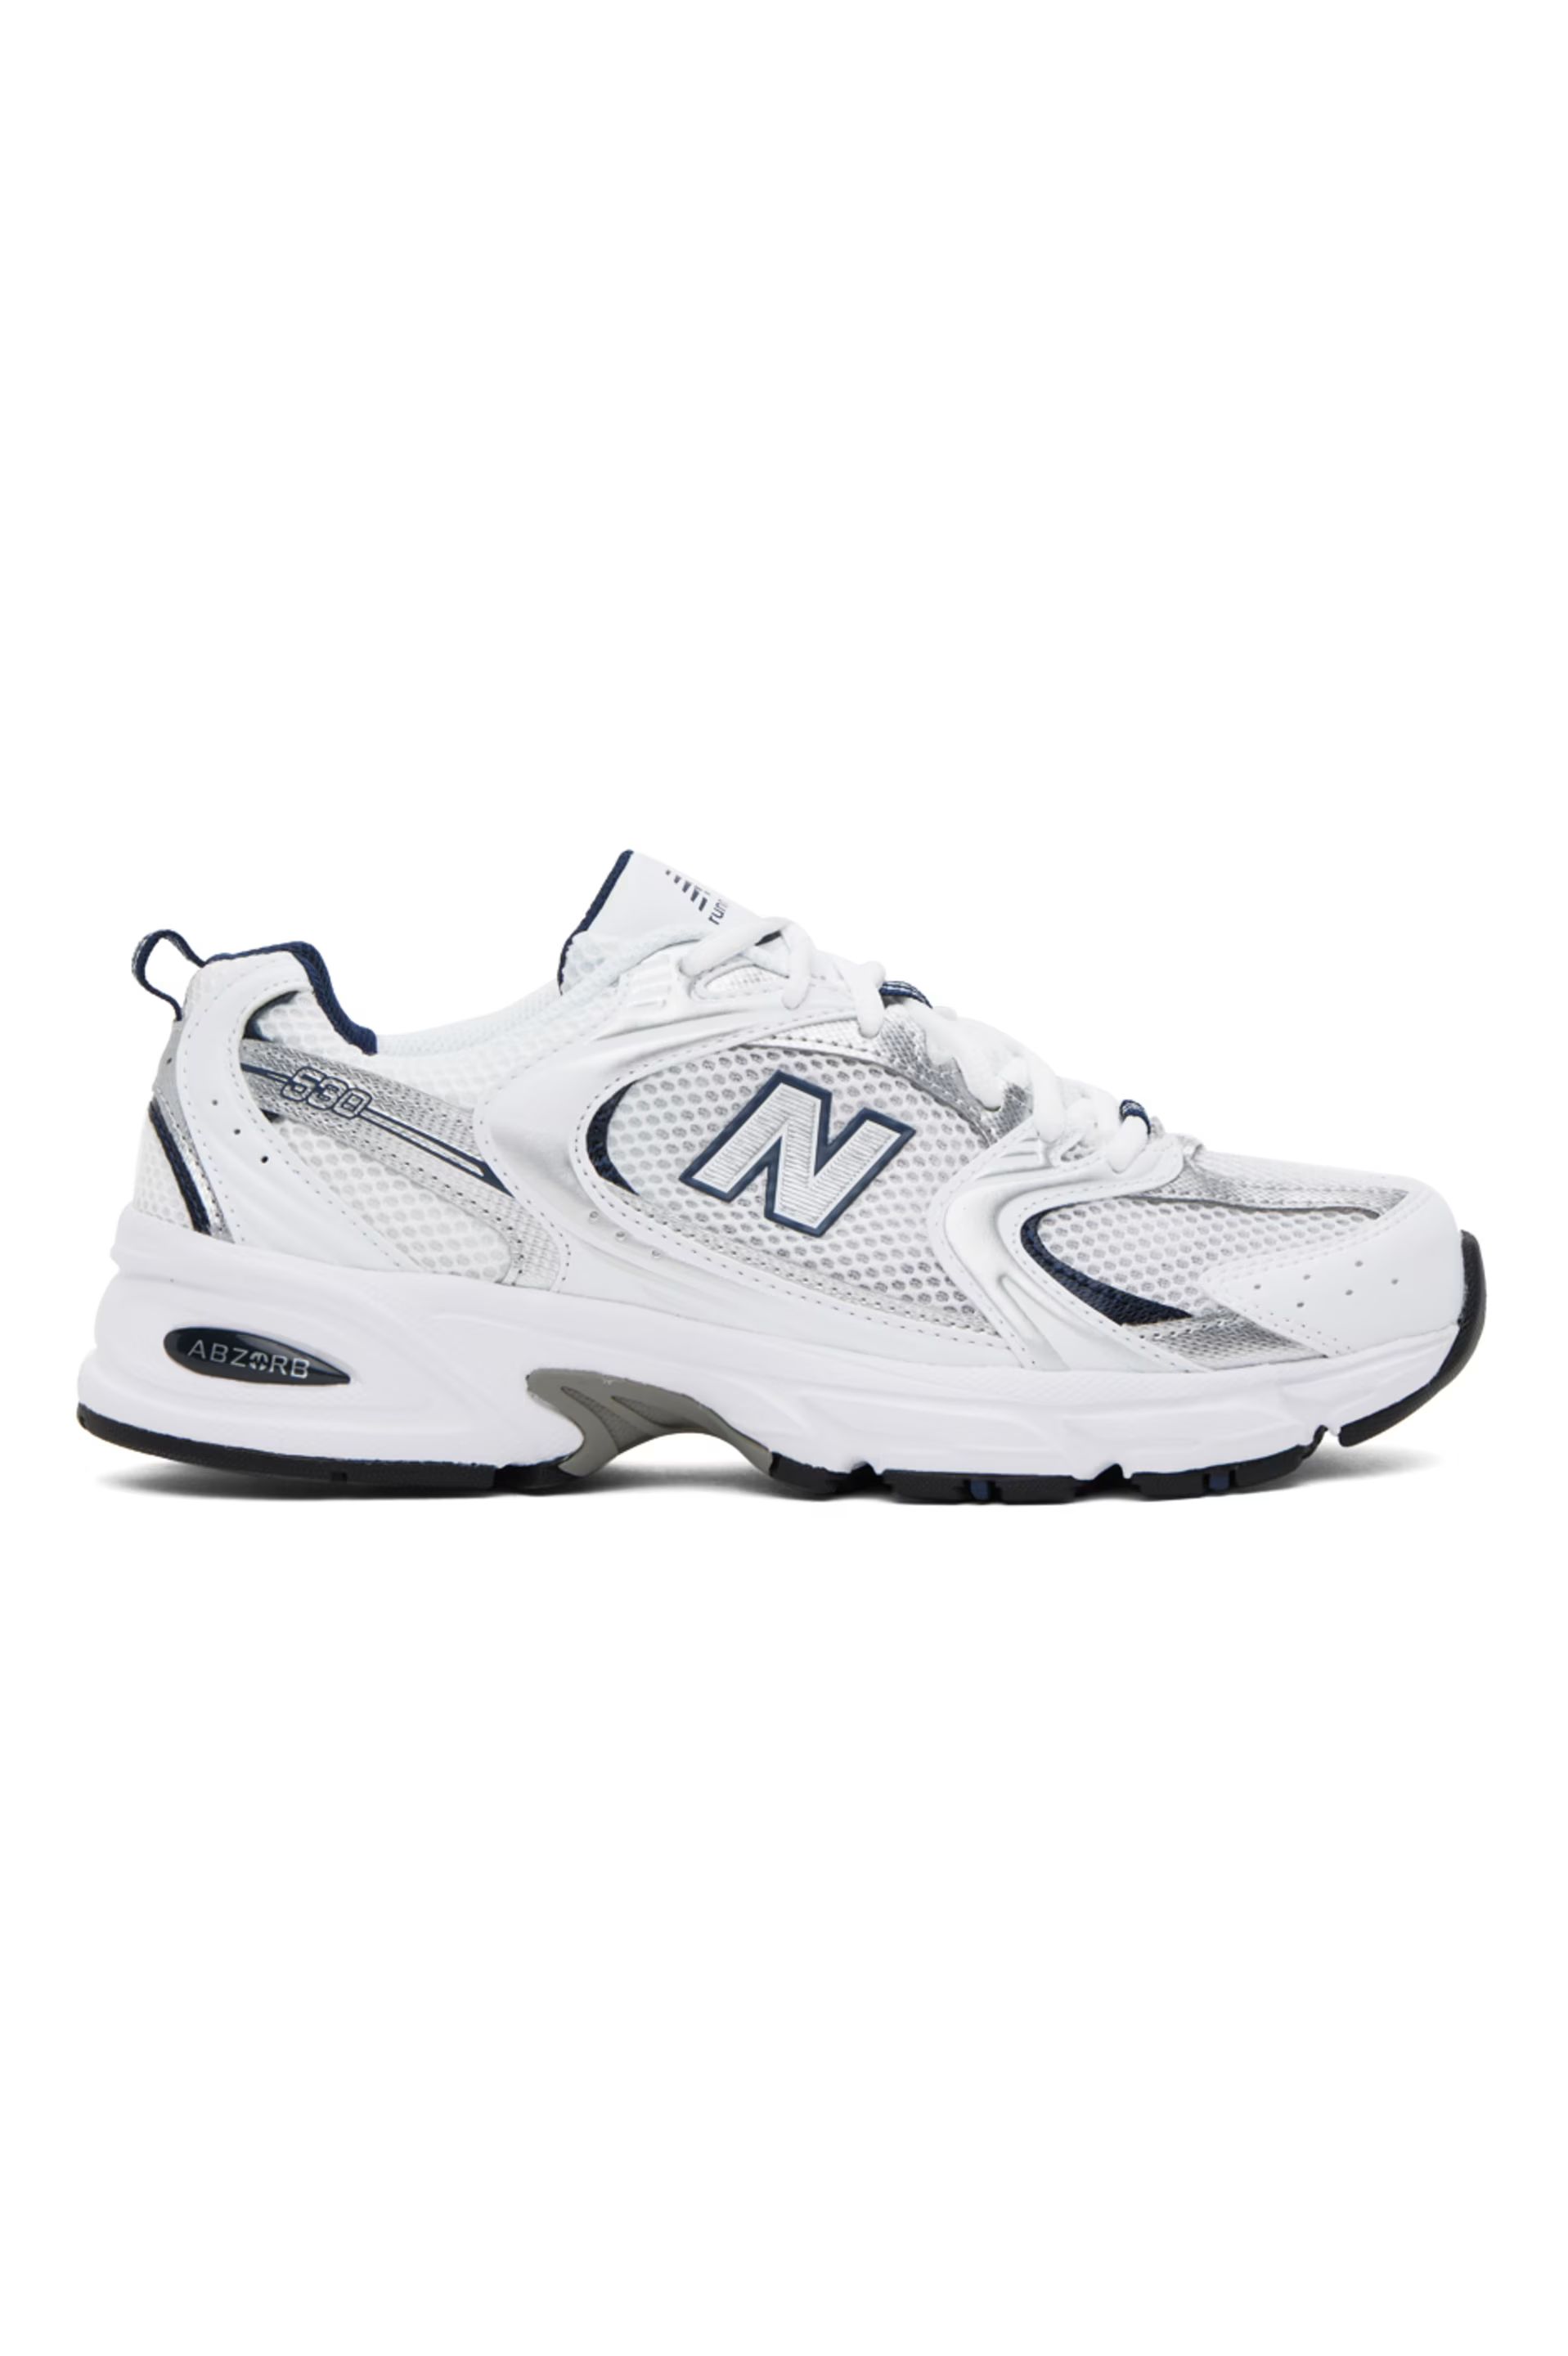 New Balance - White & Silver 530 Sneakers | SSENSE